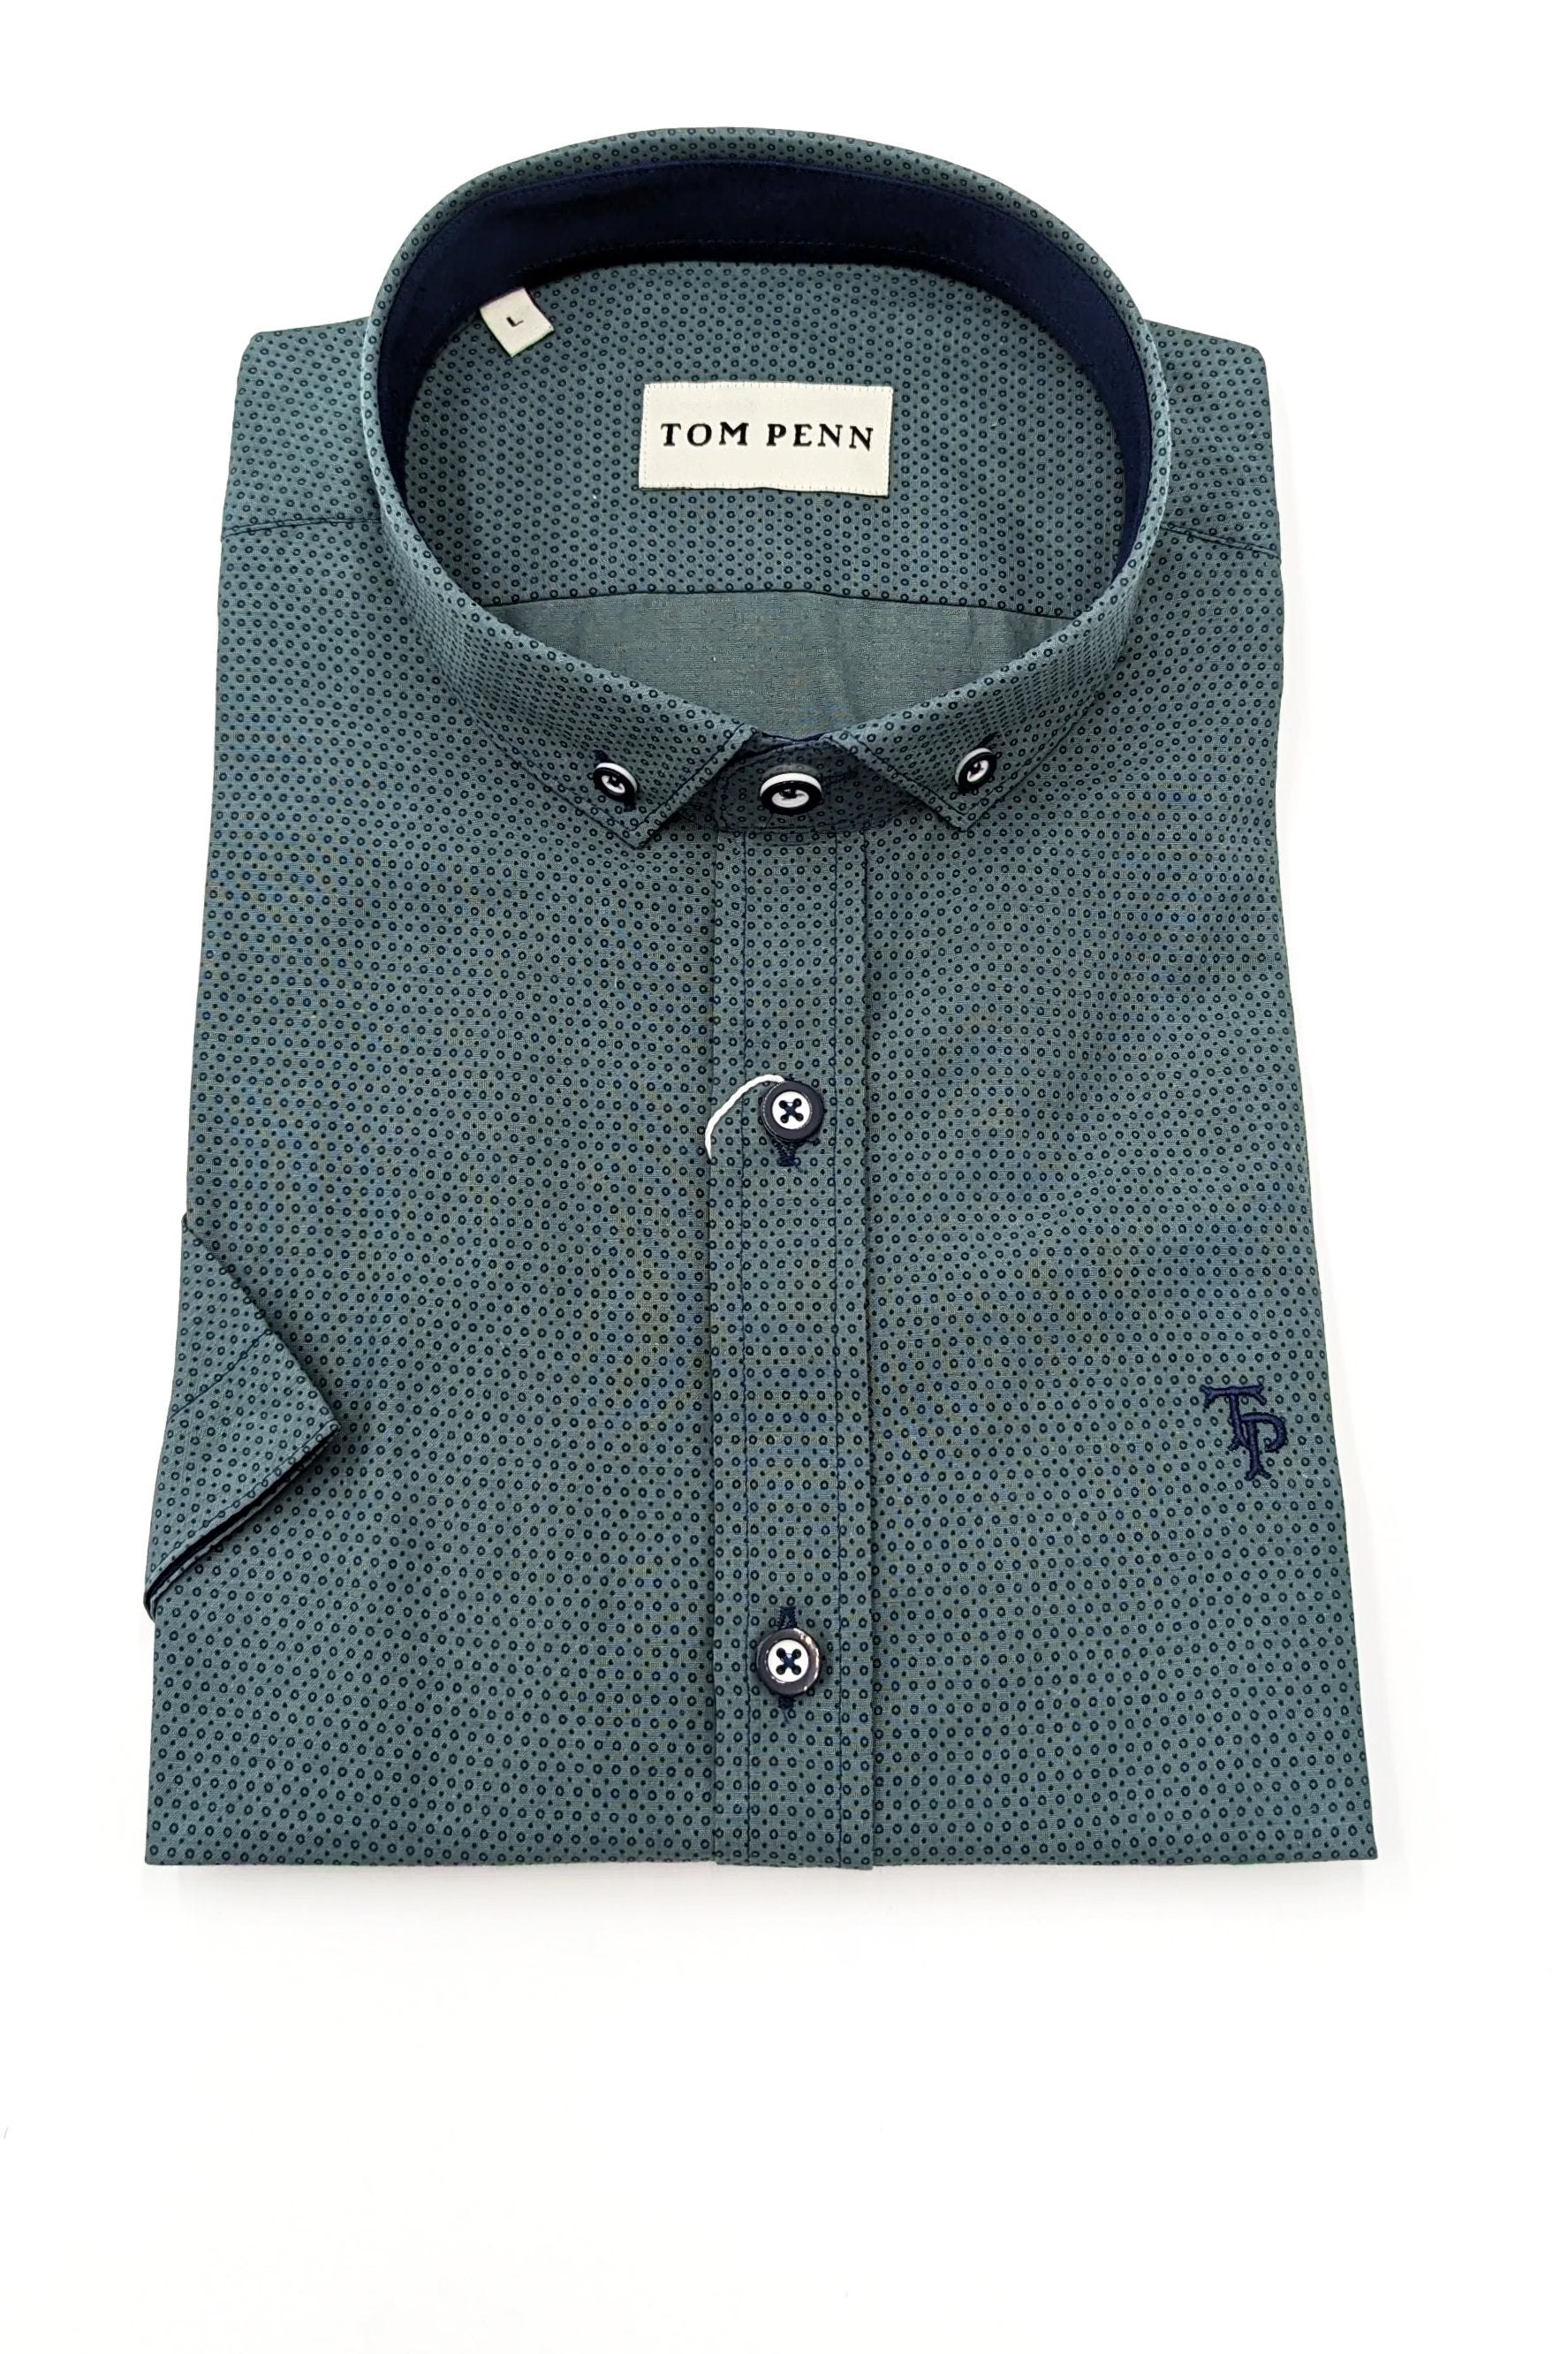 Tom Penn Short Sleeve Khaki Print Mens Shirt